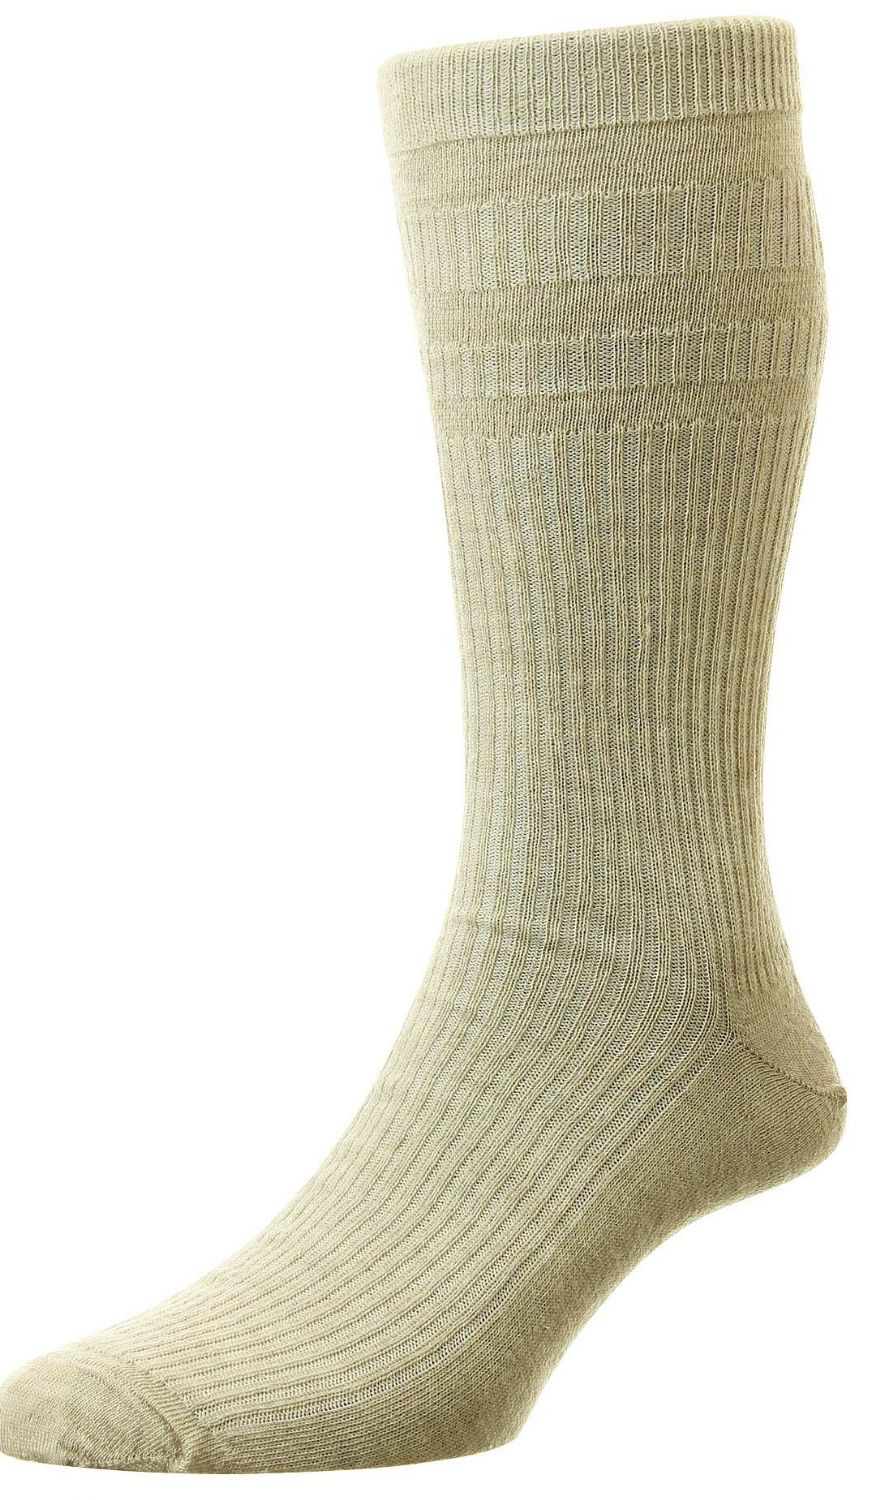 HJ90 Softop Socks Oatmeal Size 11-13